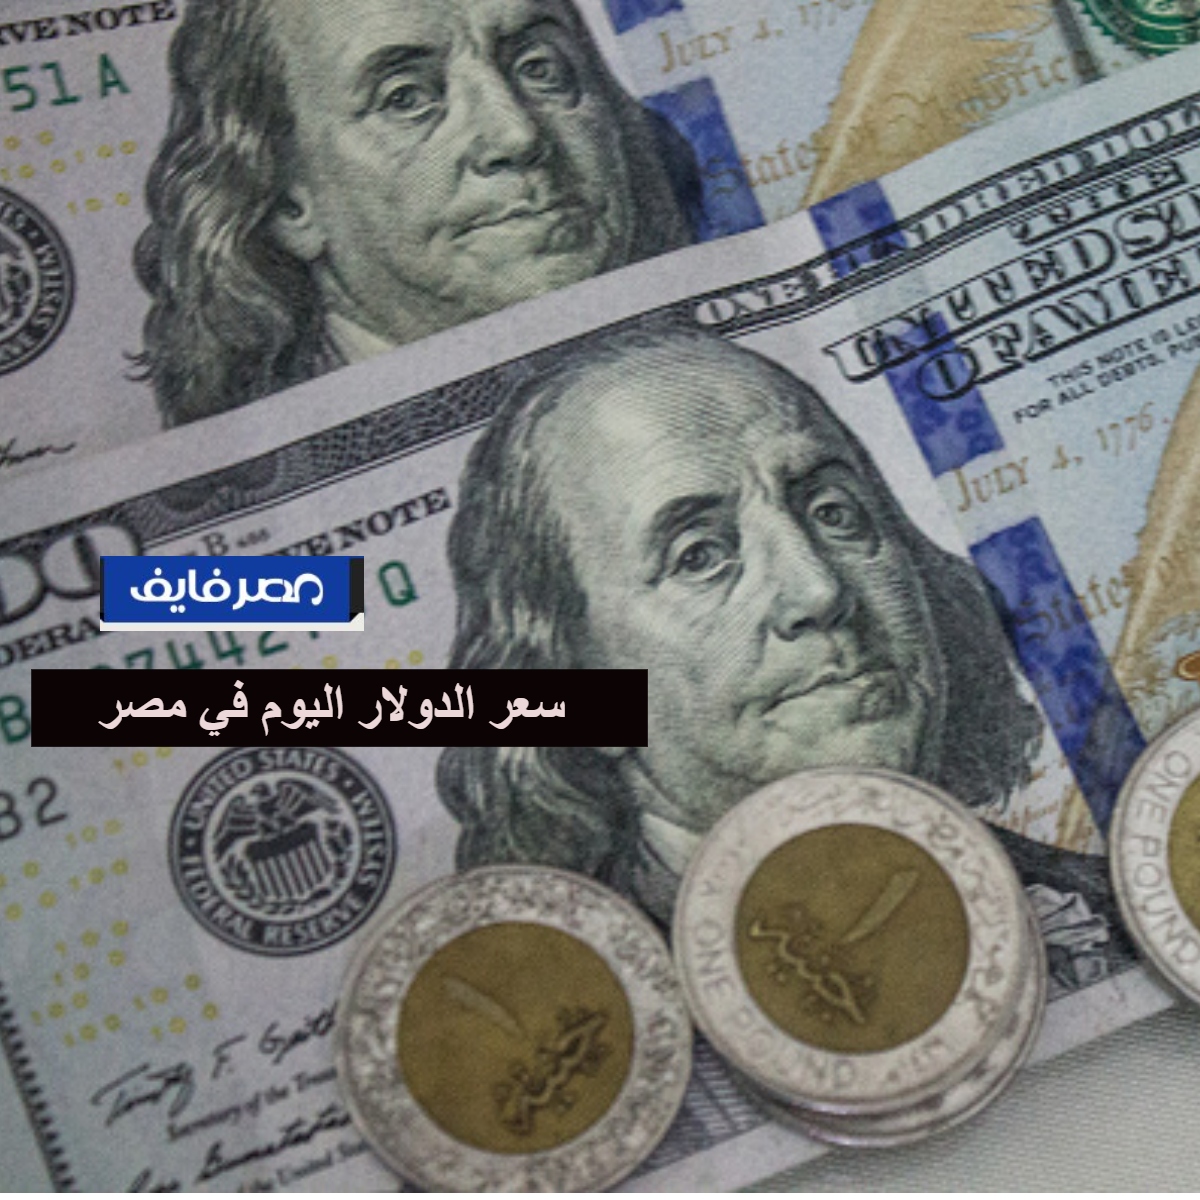 سعر الدولار اليوم في مصر يتراجع في البنوك بنهاية التعاملات وهناك تنبؤات بمزيد من الانخفاض